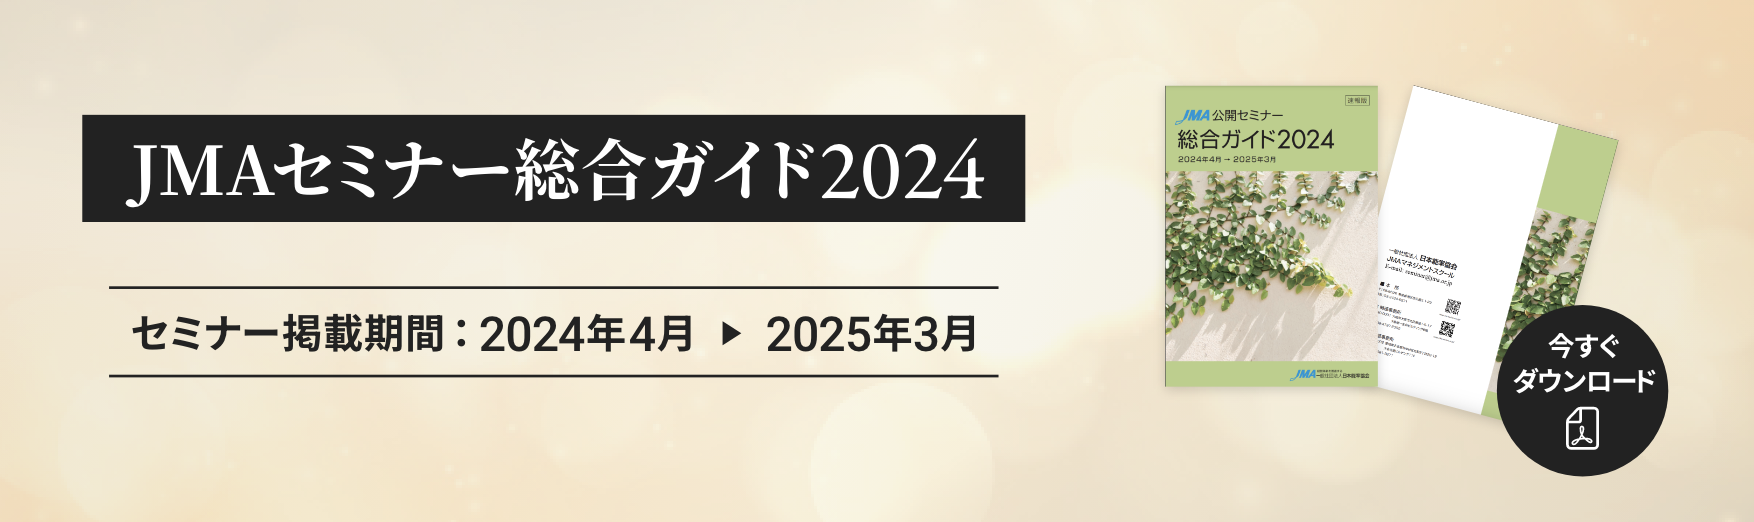 JMAセミナー 総合ガイド 2024 セミナー掲載期間：2024年4月 2025年3月